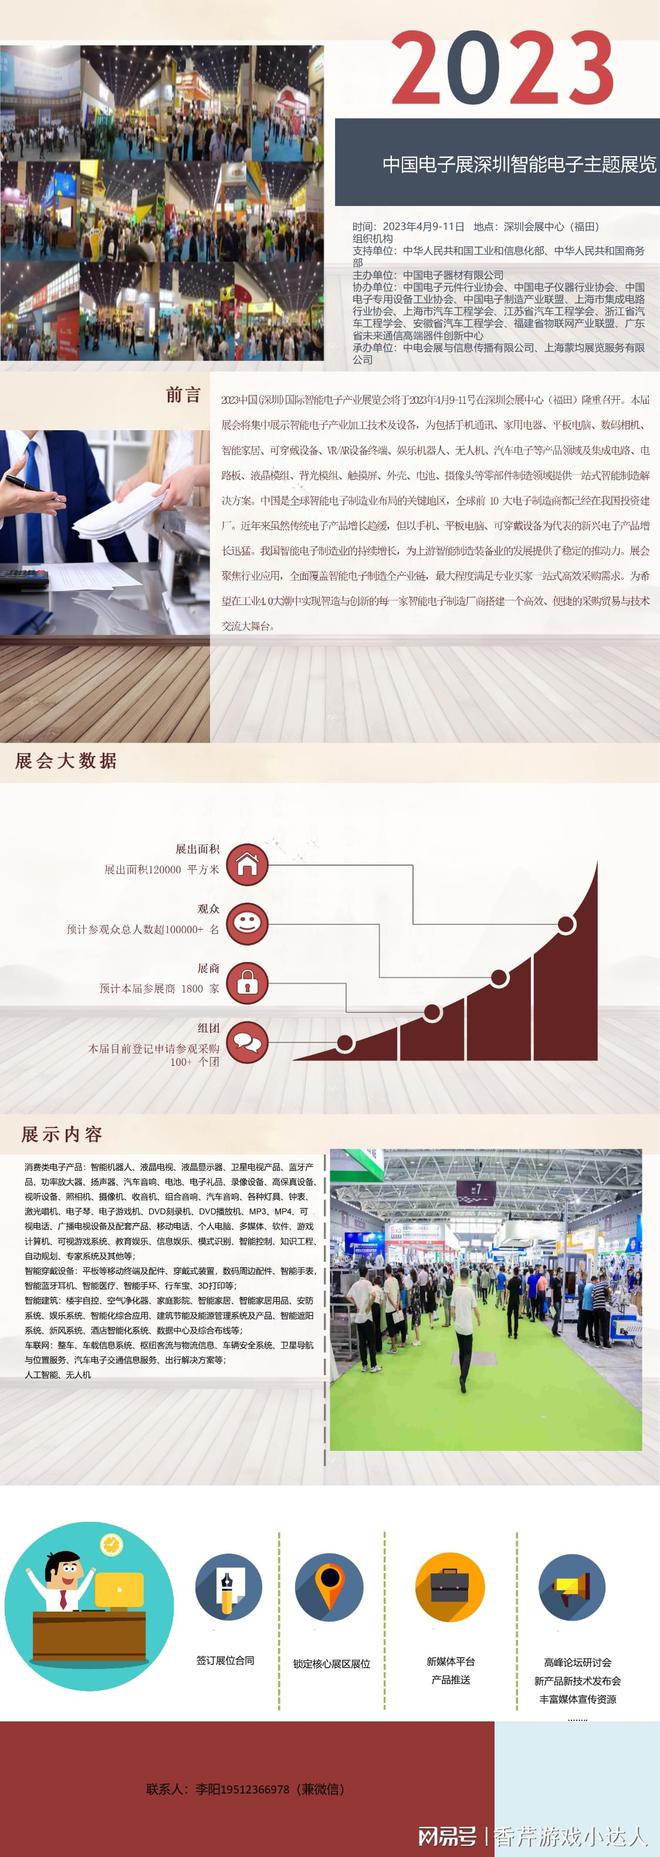 2023中国电子展深圳智能电子主题展览会4月9日开展(图1)